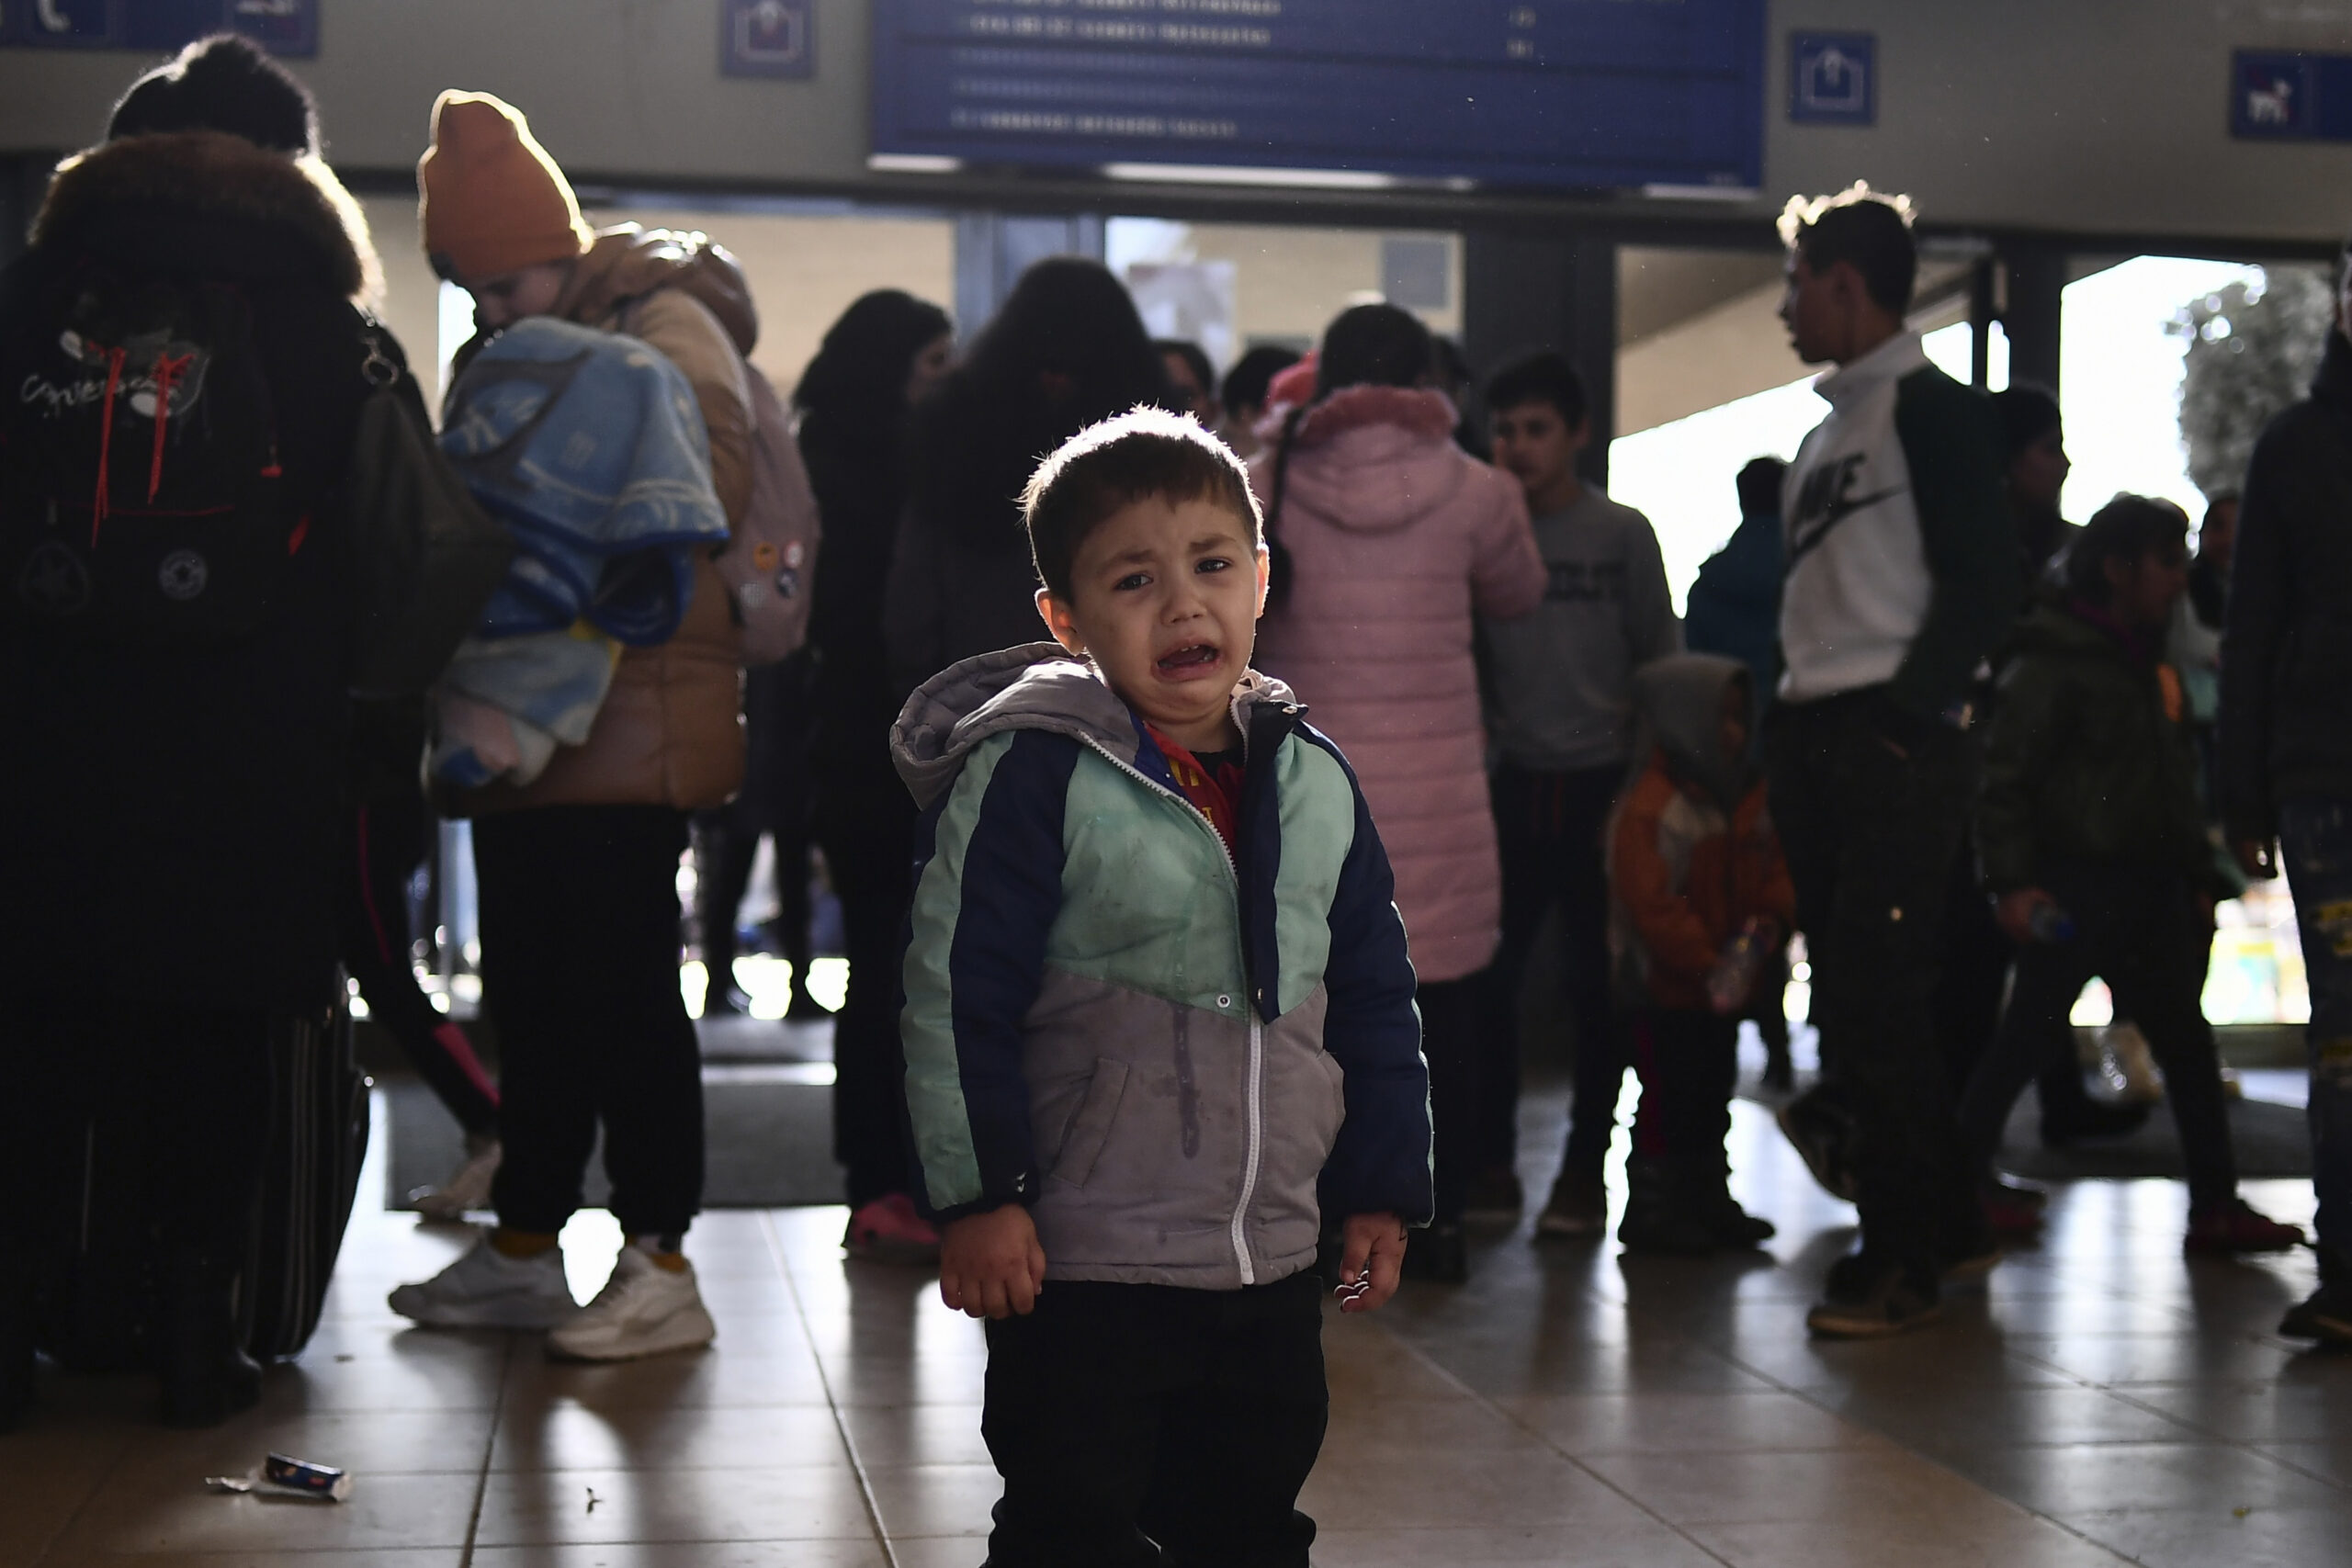 Esta desgarradora foto muestra a un niño llorando en una estación de tren